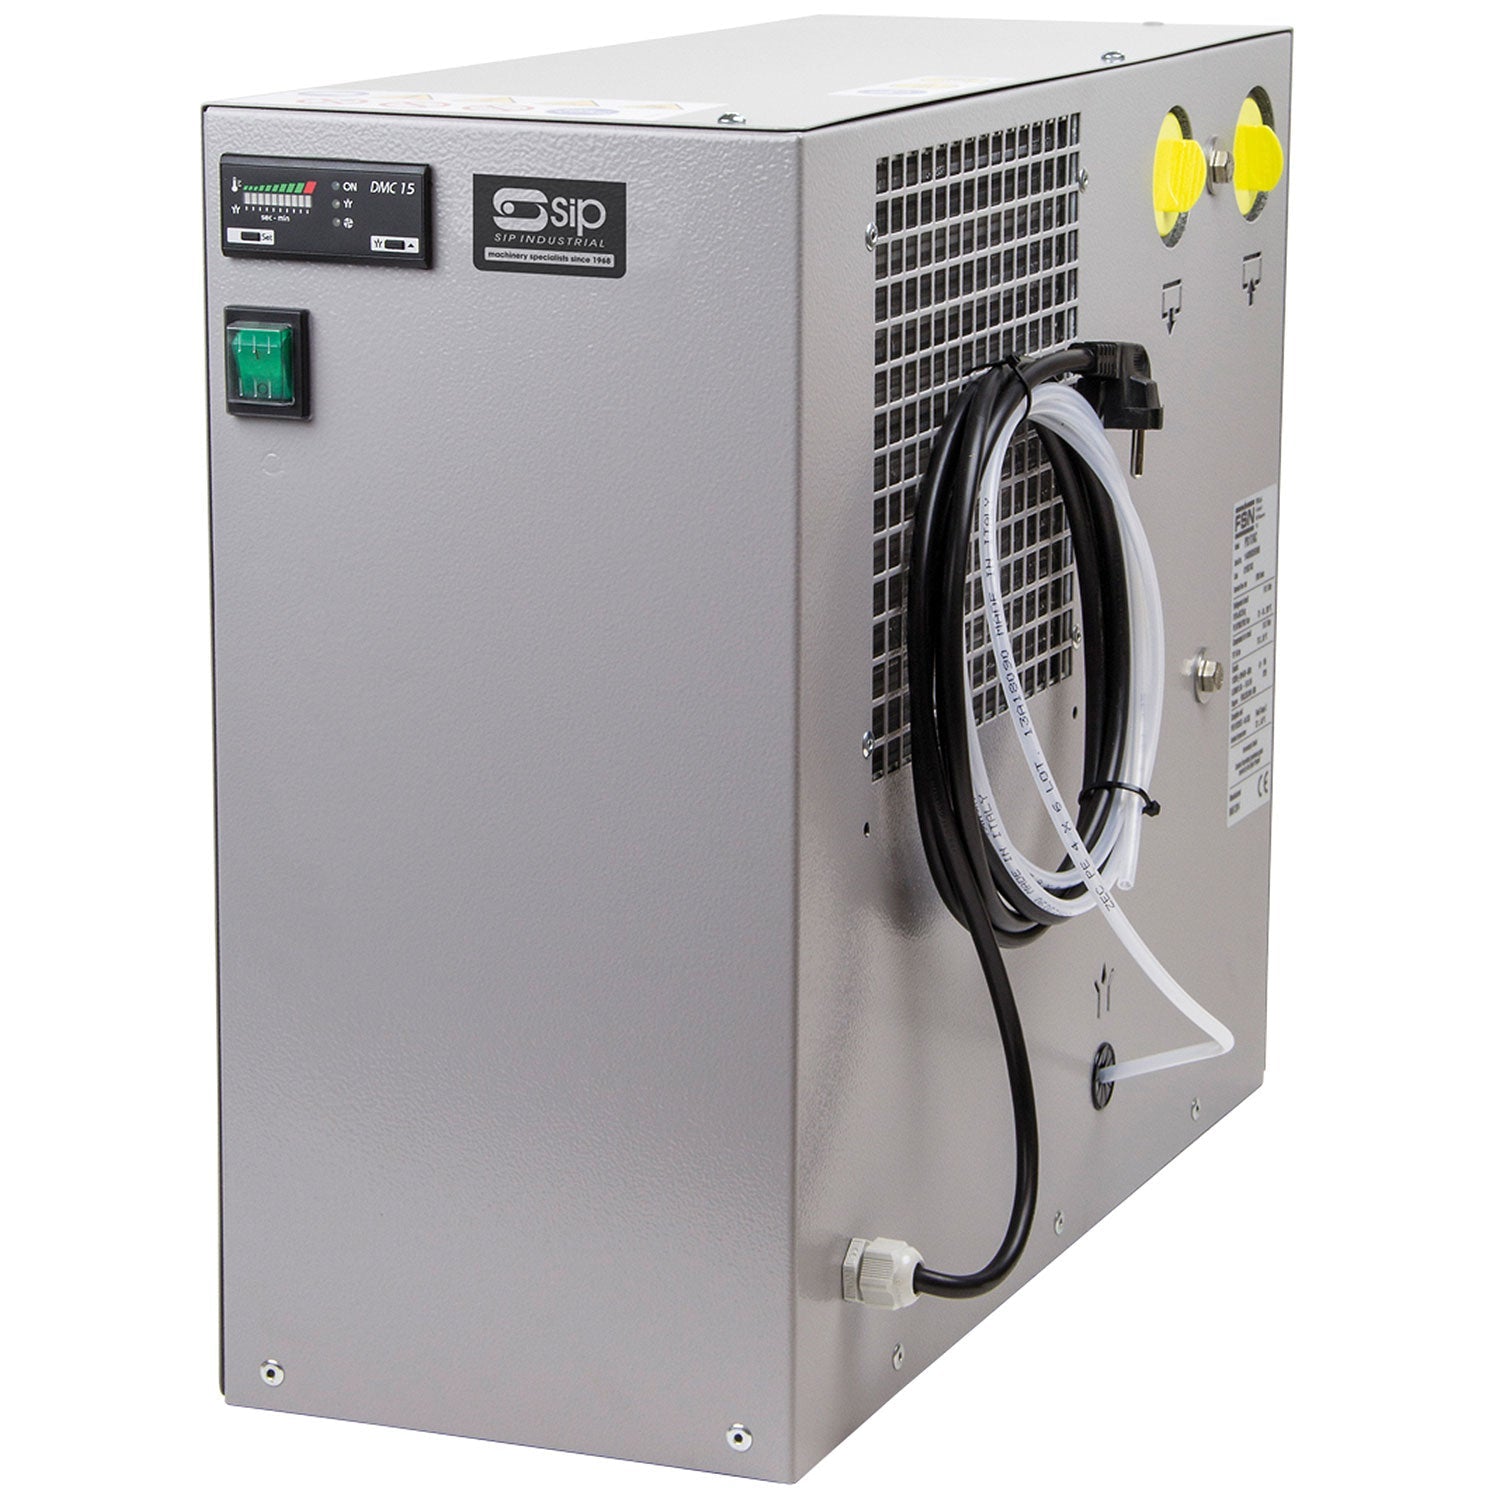 SIP PS11 Compressed Air Dryer, Sip Industrial